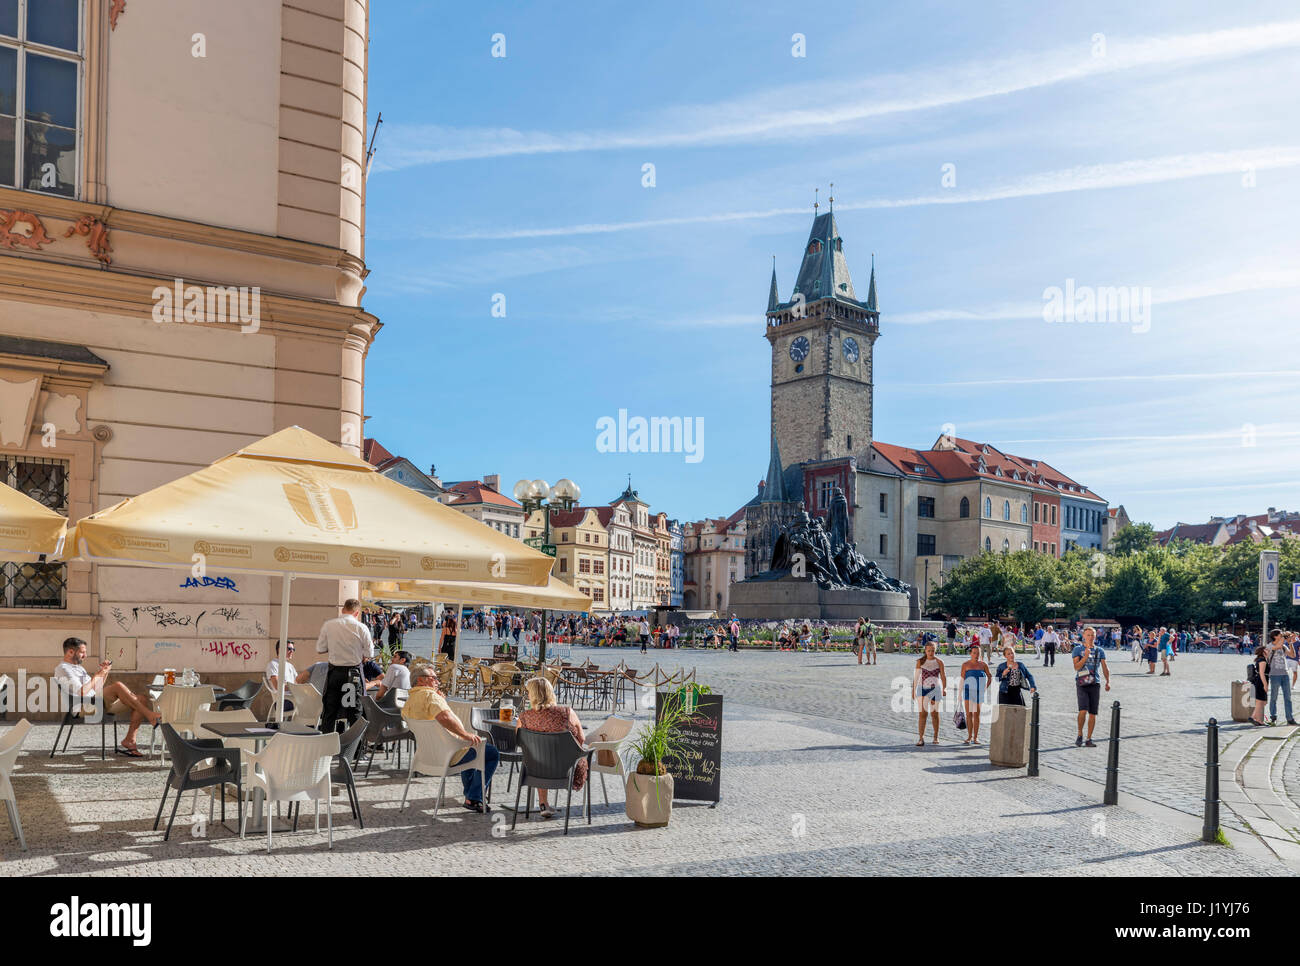 Cafe in the Old Town Square (Staroměstské náměstí), Staré Město, Prague, Czech Republic Stock Photo